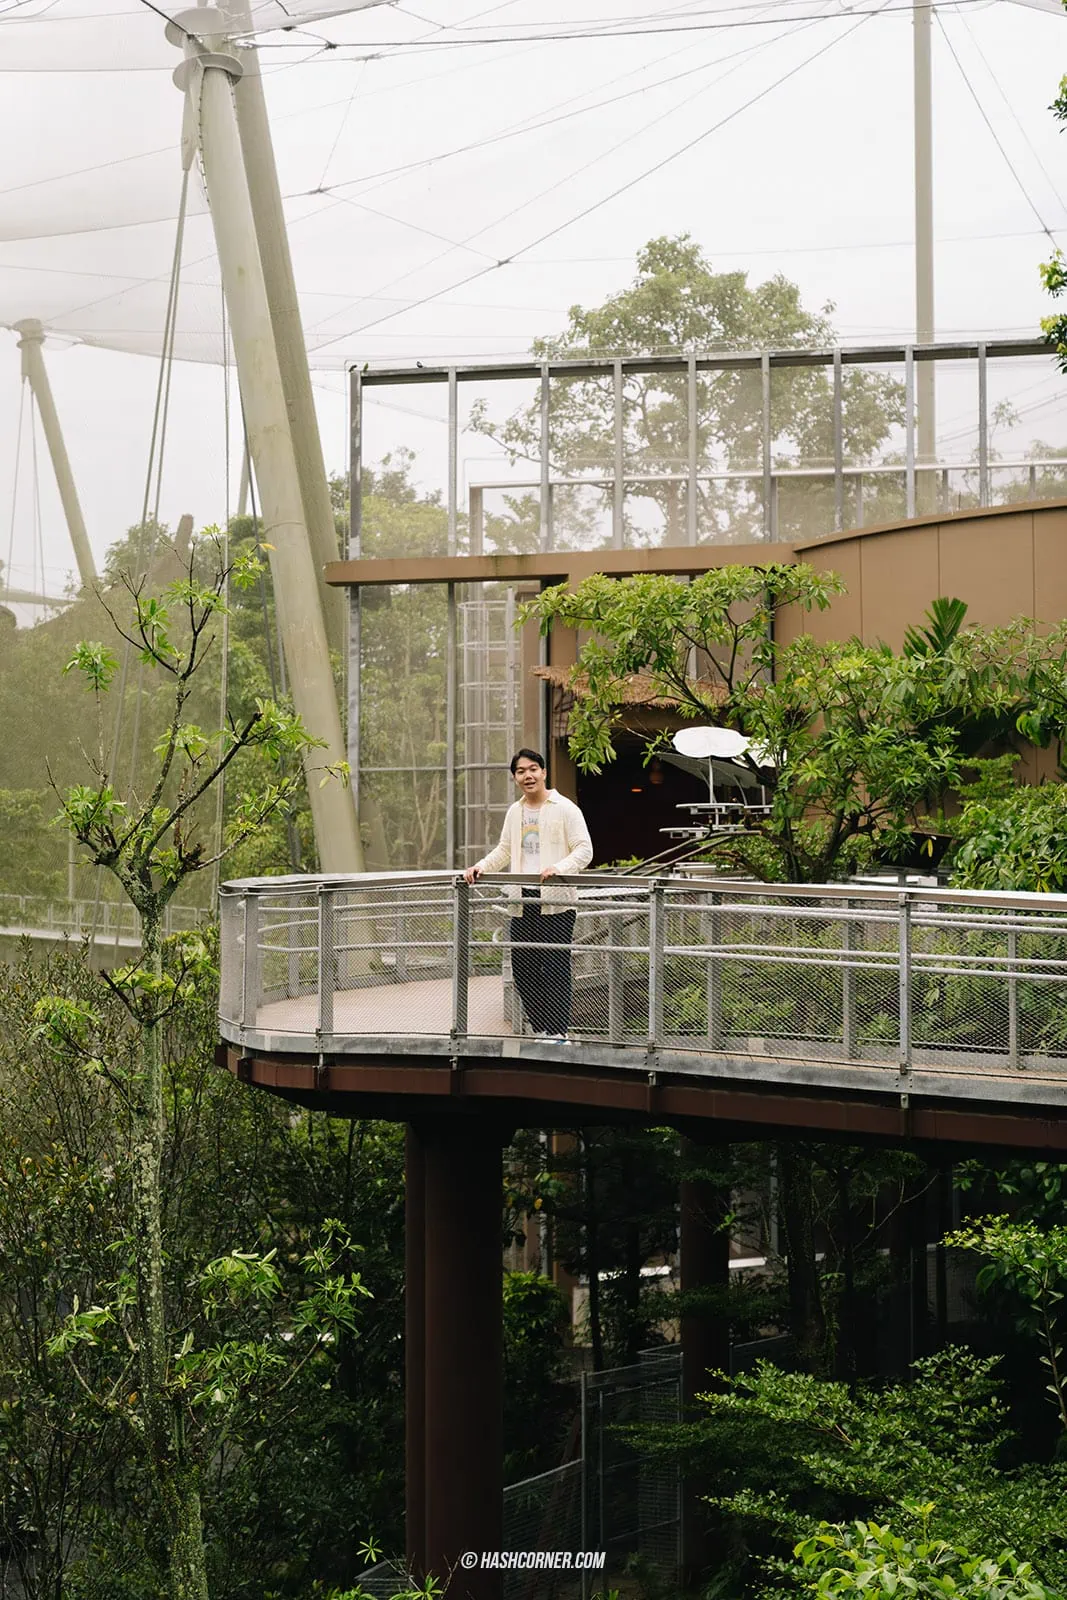 รีวิว Bird Paradise + สวนสัตว์สิงคโปร์ เที่ยวเดย์ทริปส่องสัตว์ &#x1f427;